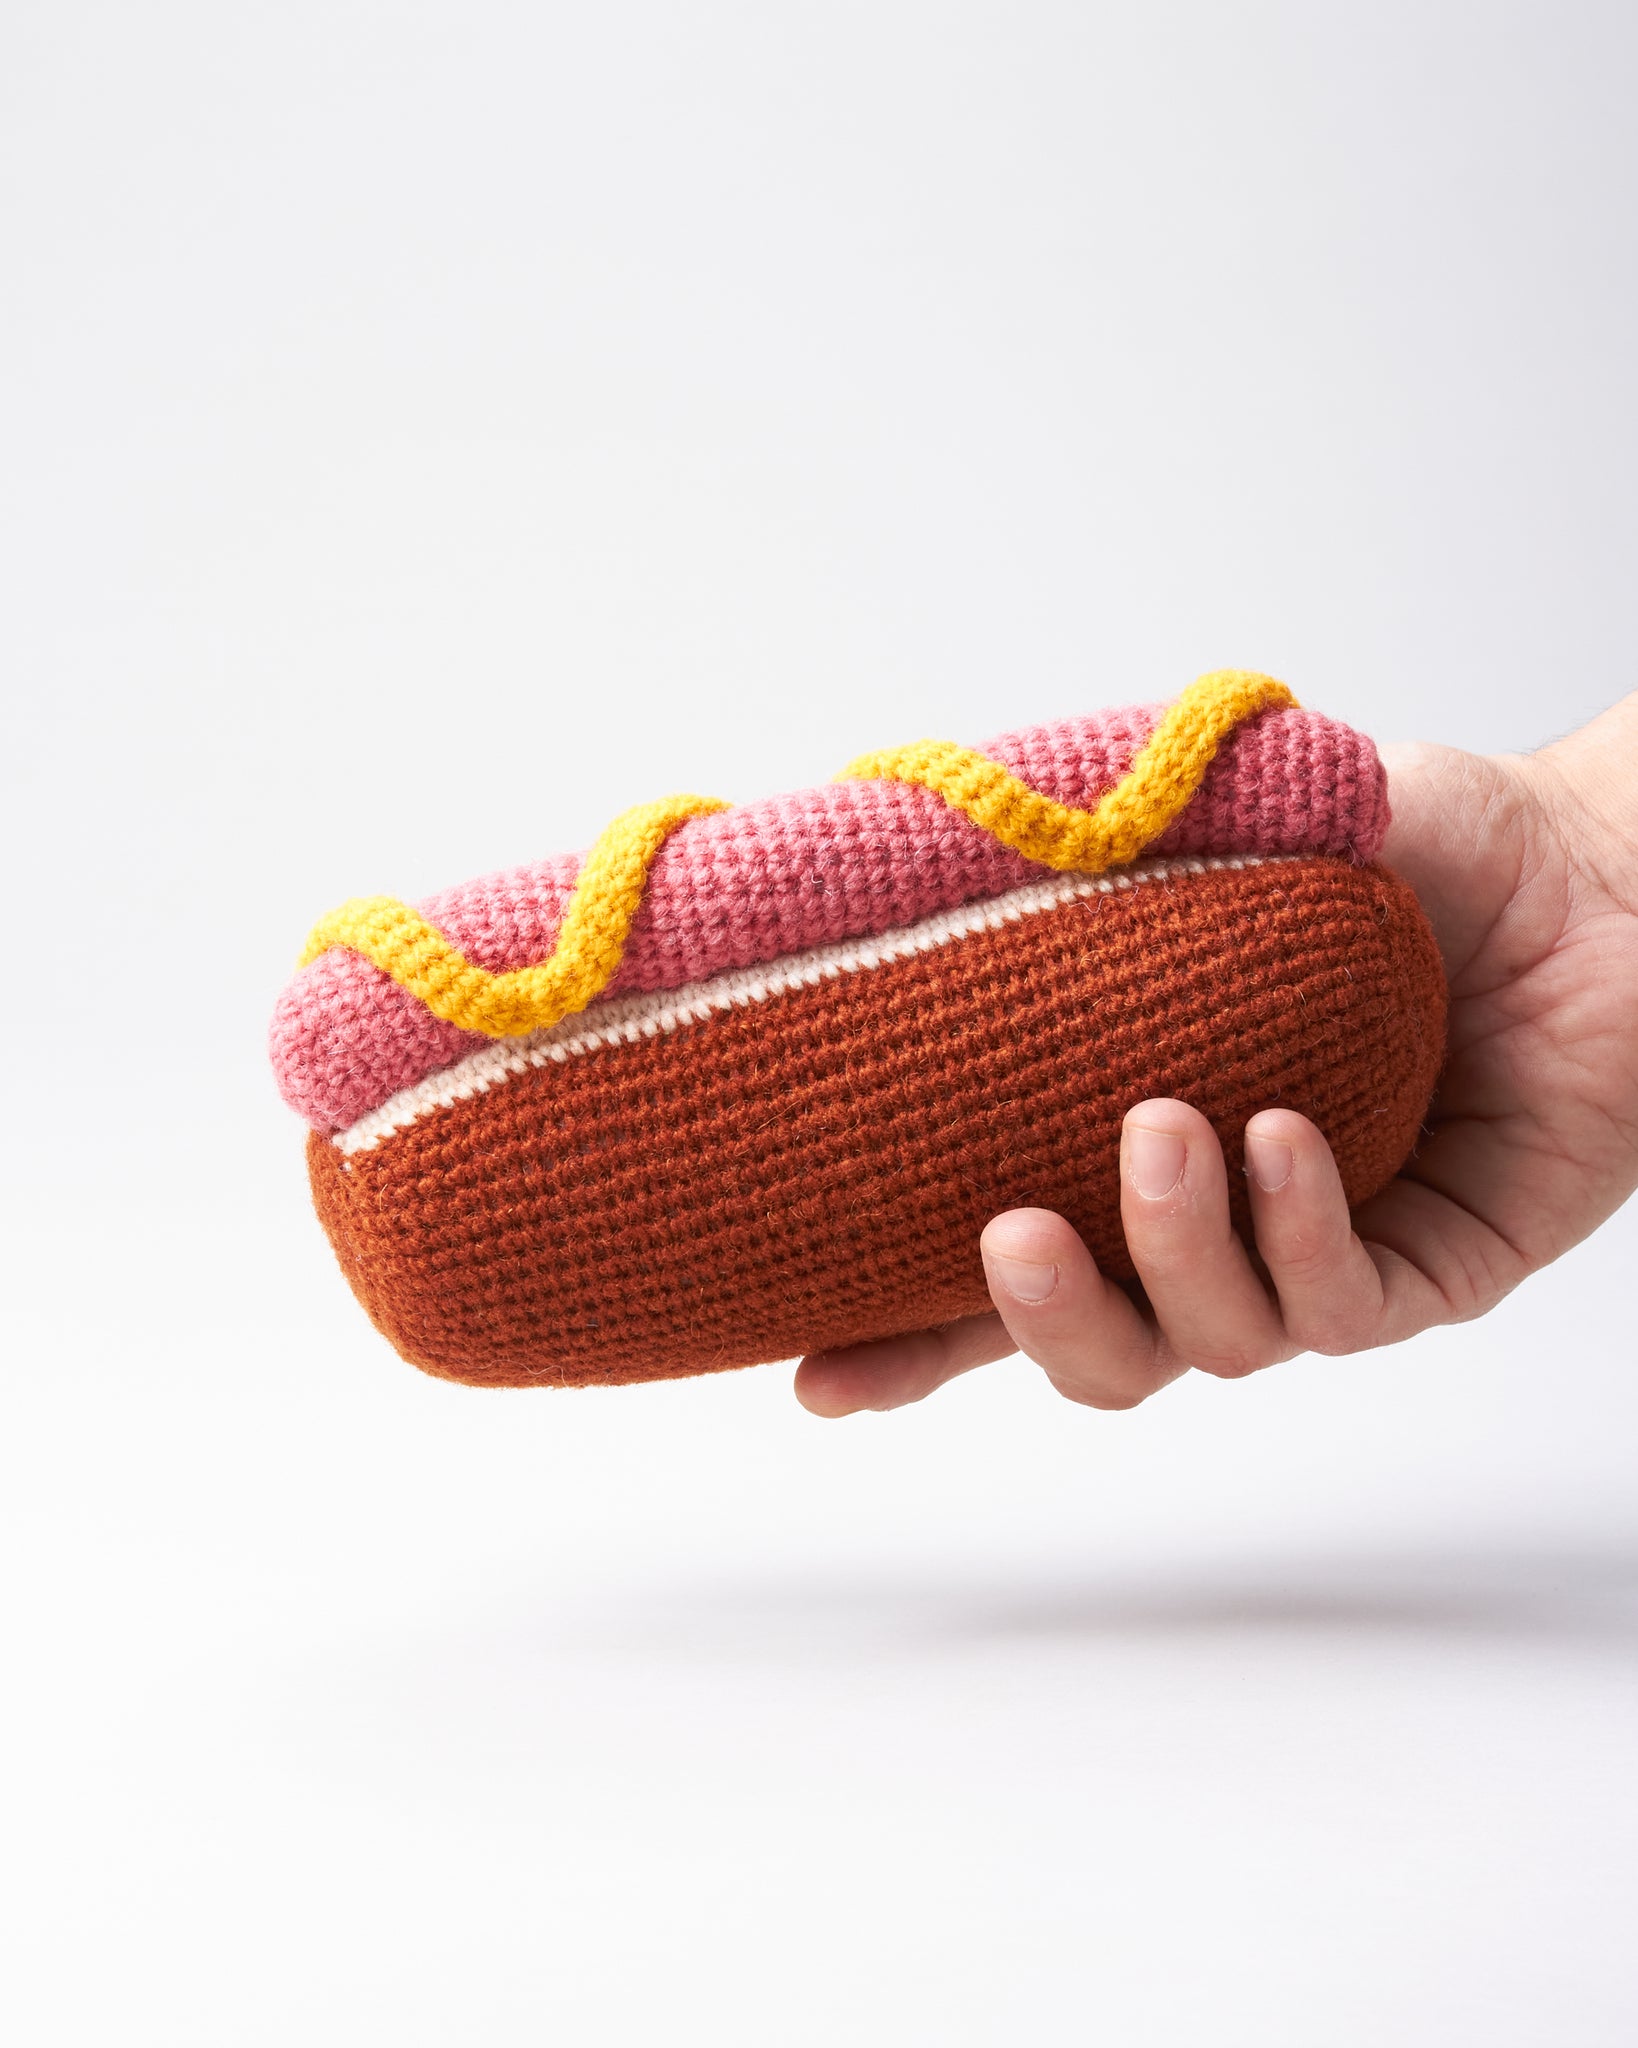 Hot Dog Dog Toy